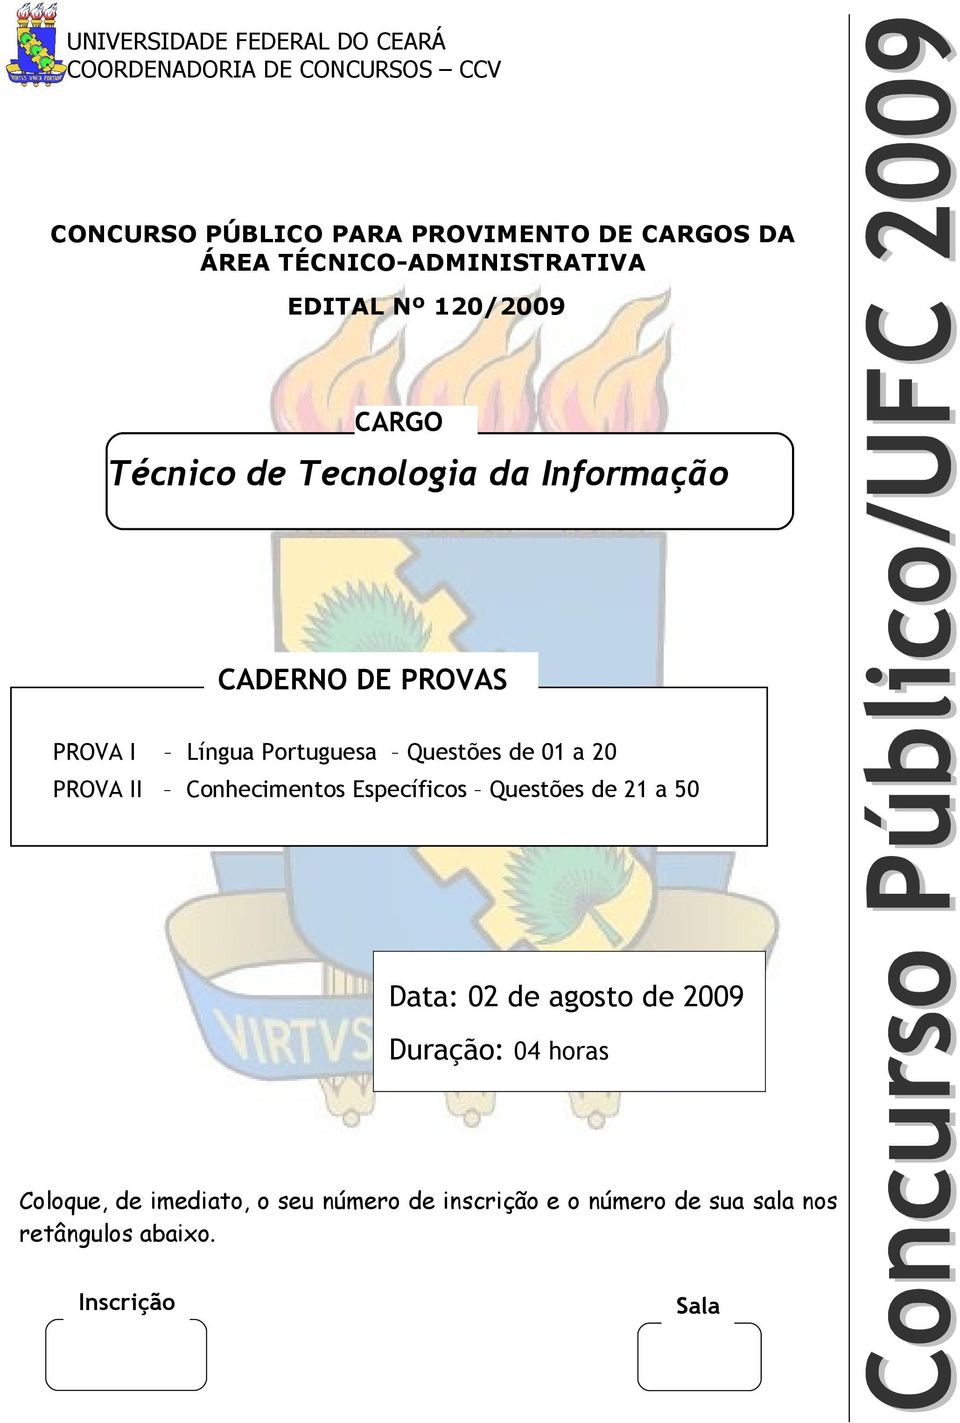 Portuguesa Questões de 01 a 20 PROVA II Conhecimentos Específicos Questões de 21 a 50 Data: 02 de agosto de 2009